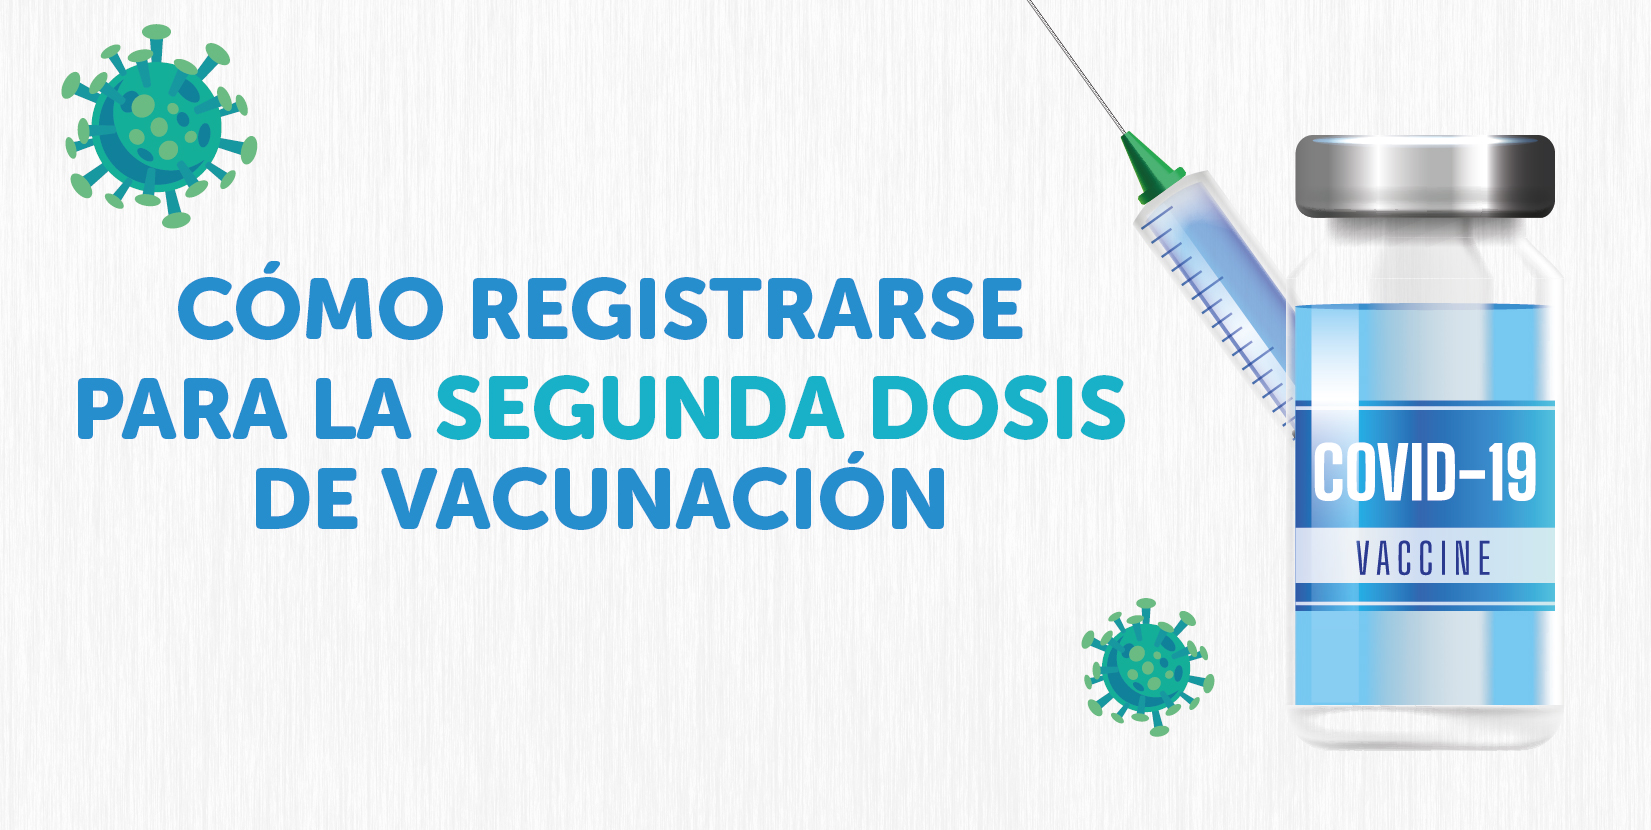 Cómo registrarse para la segunda dosis de vacunación